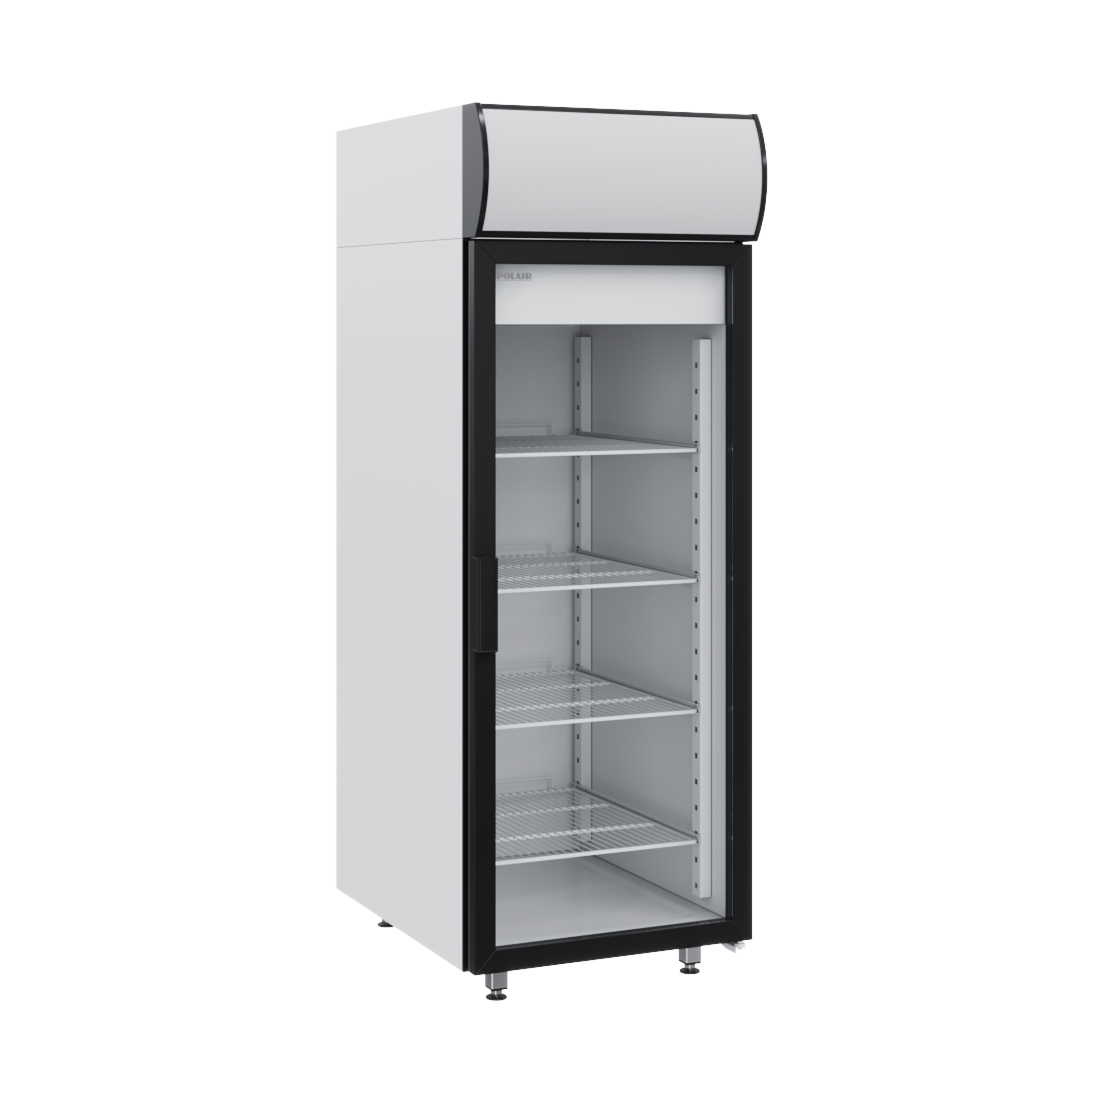 среднетемпературные холодильные шкафы используют для